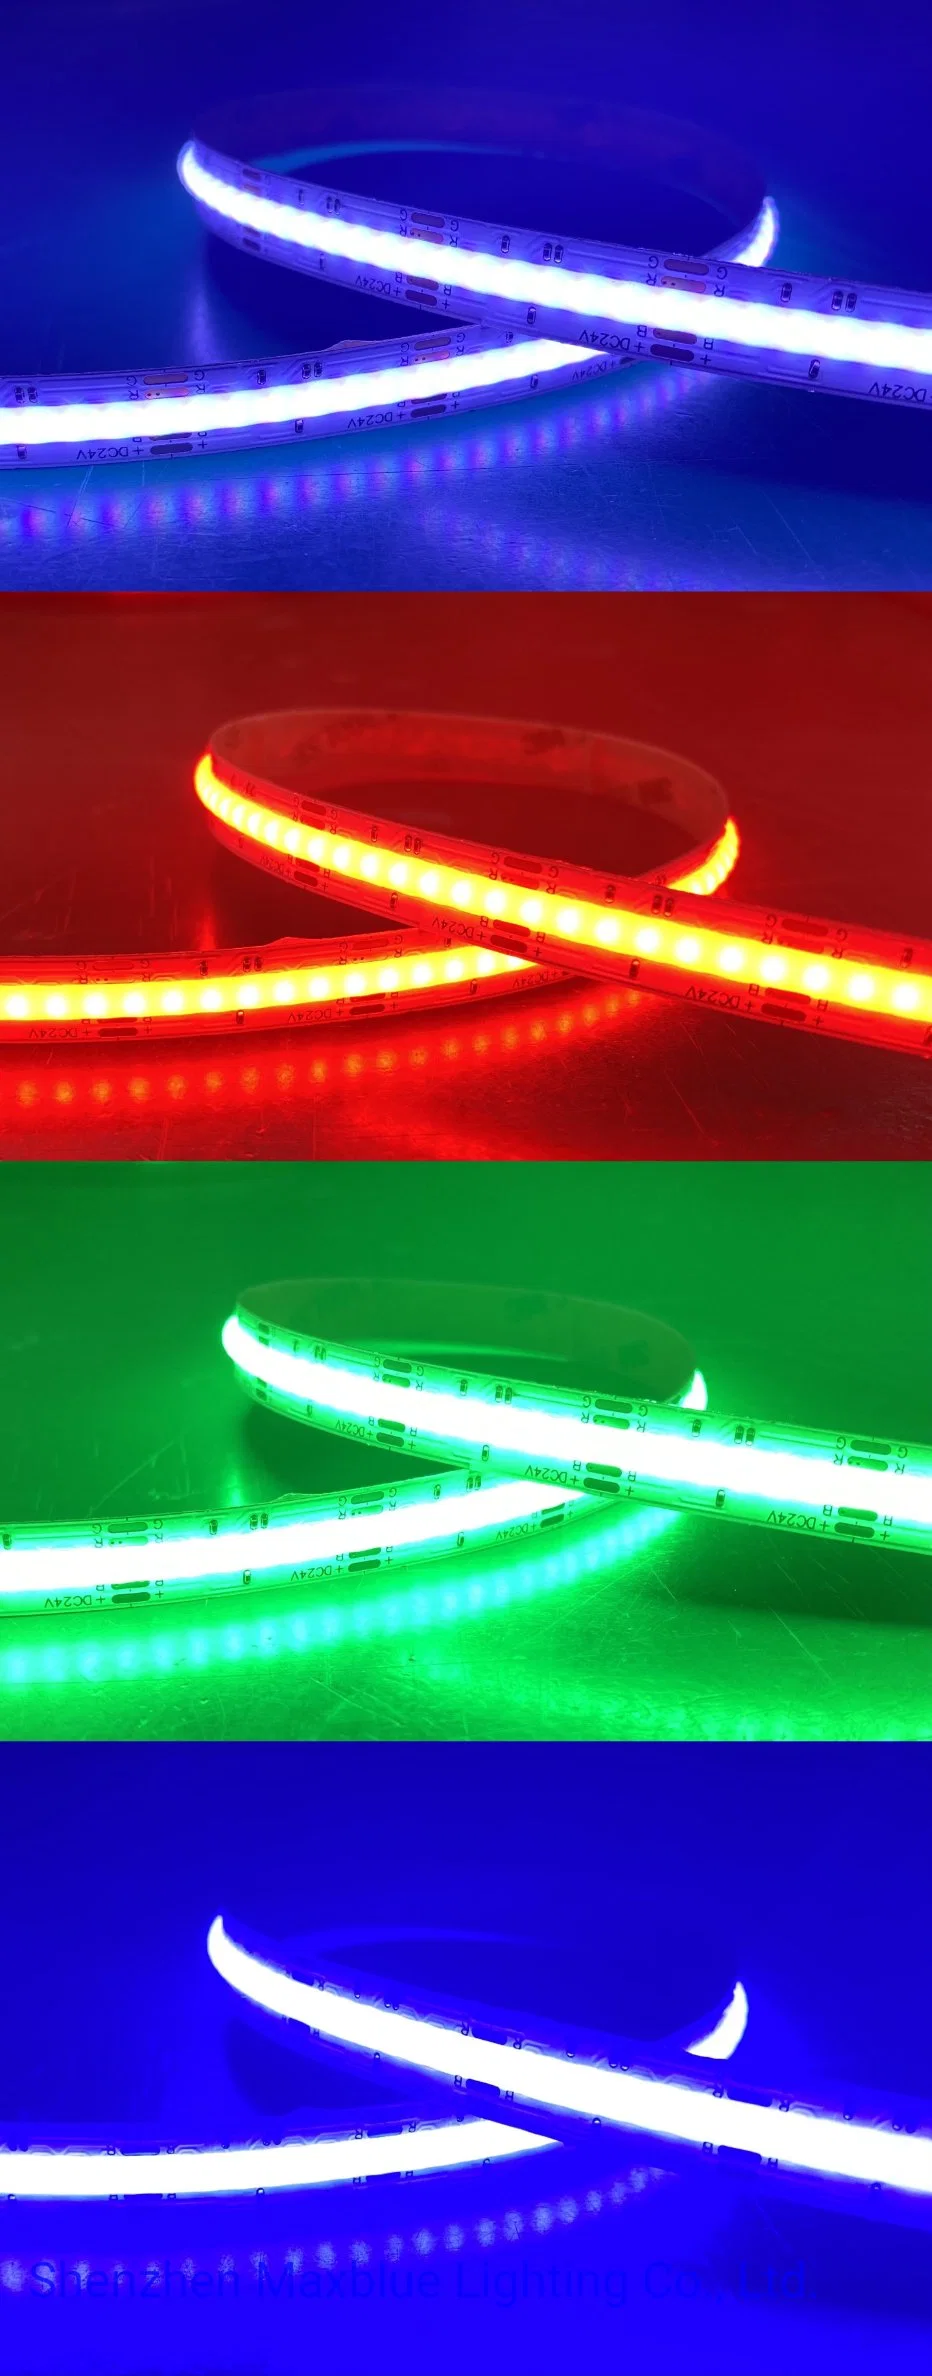 DC24V 840chips RGB Color Changing COB LED Light Strip